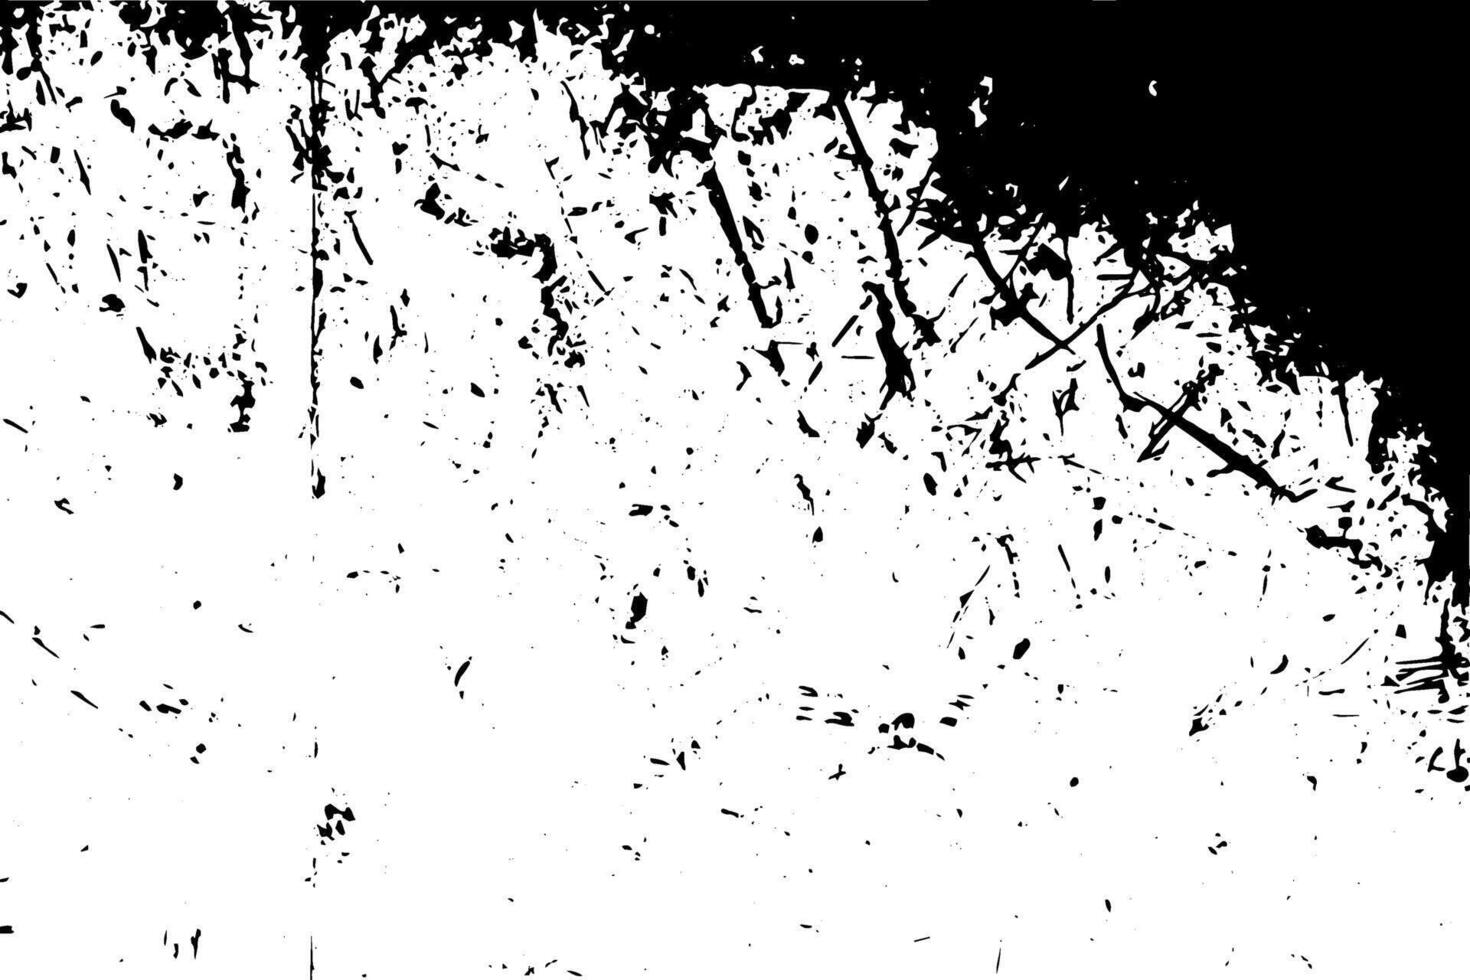 textura rústica do vetor do grunge com grão e manchas. fundo de ruído abstrato. superfície desgastada.